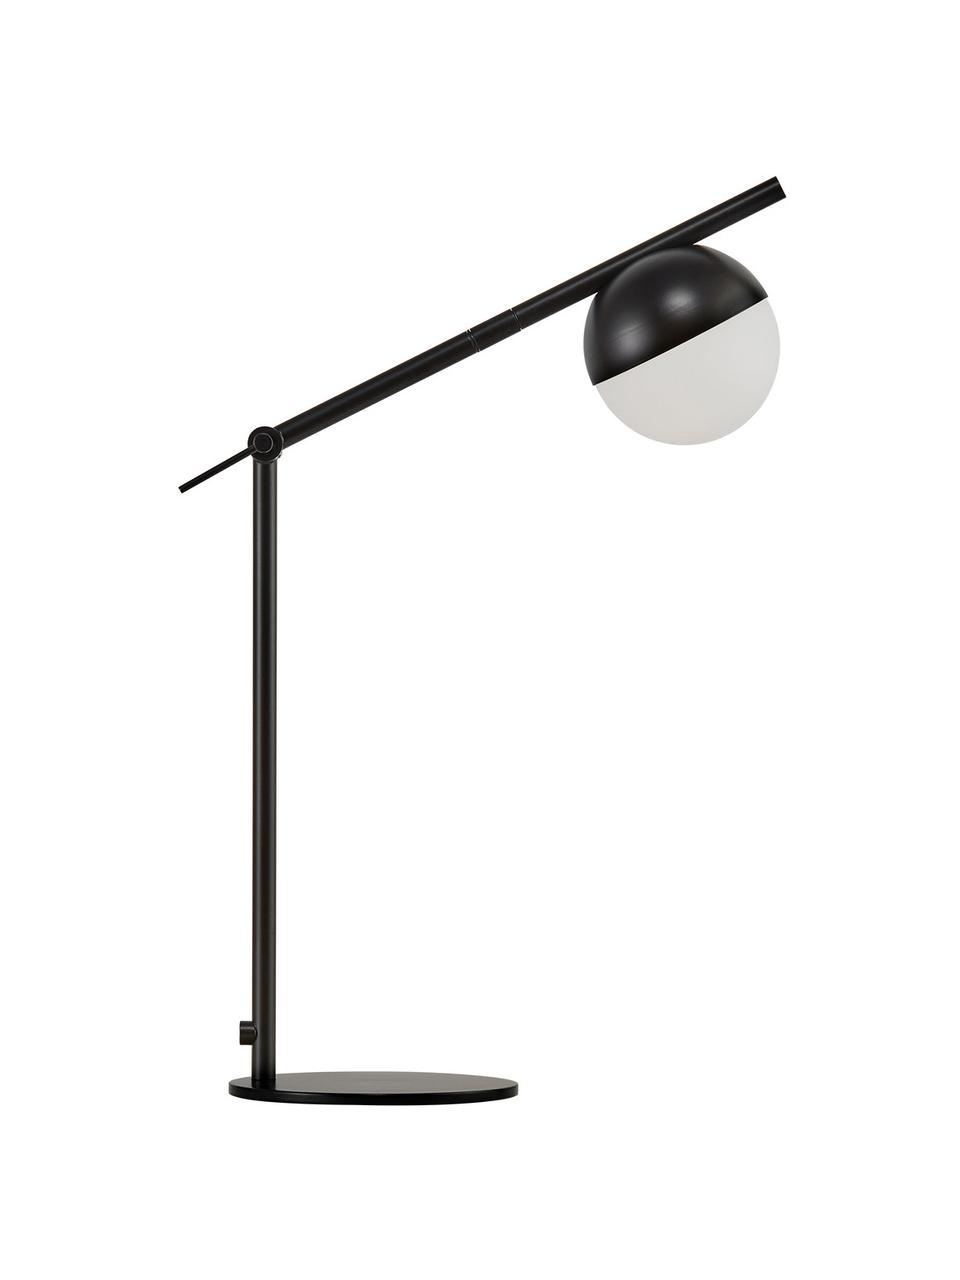 Schreibtischlampe Contina mit Opalglas, Lampenschirm: Opalglas, Lampenfuß: Metall, beschichtet, Weiß, Schwarz, 15 x 49 cm